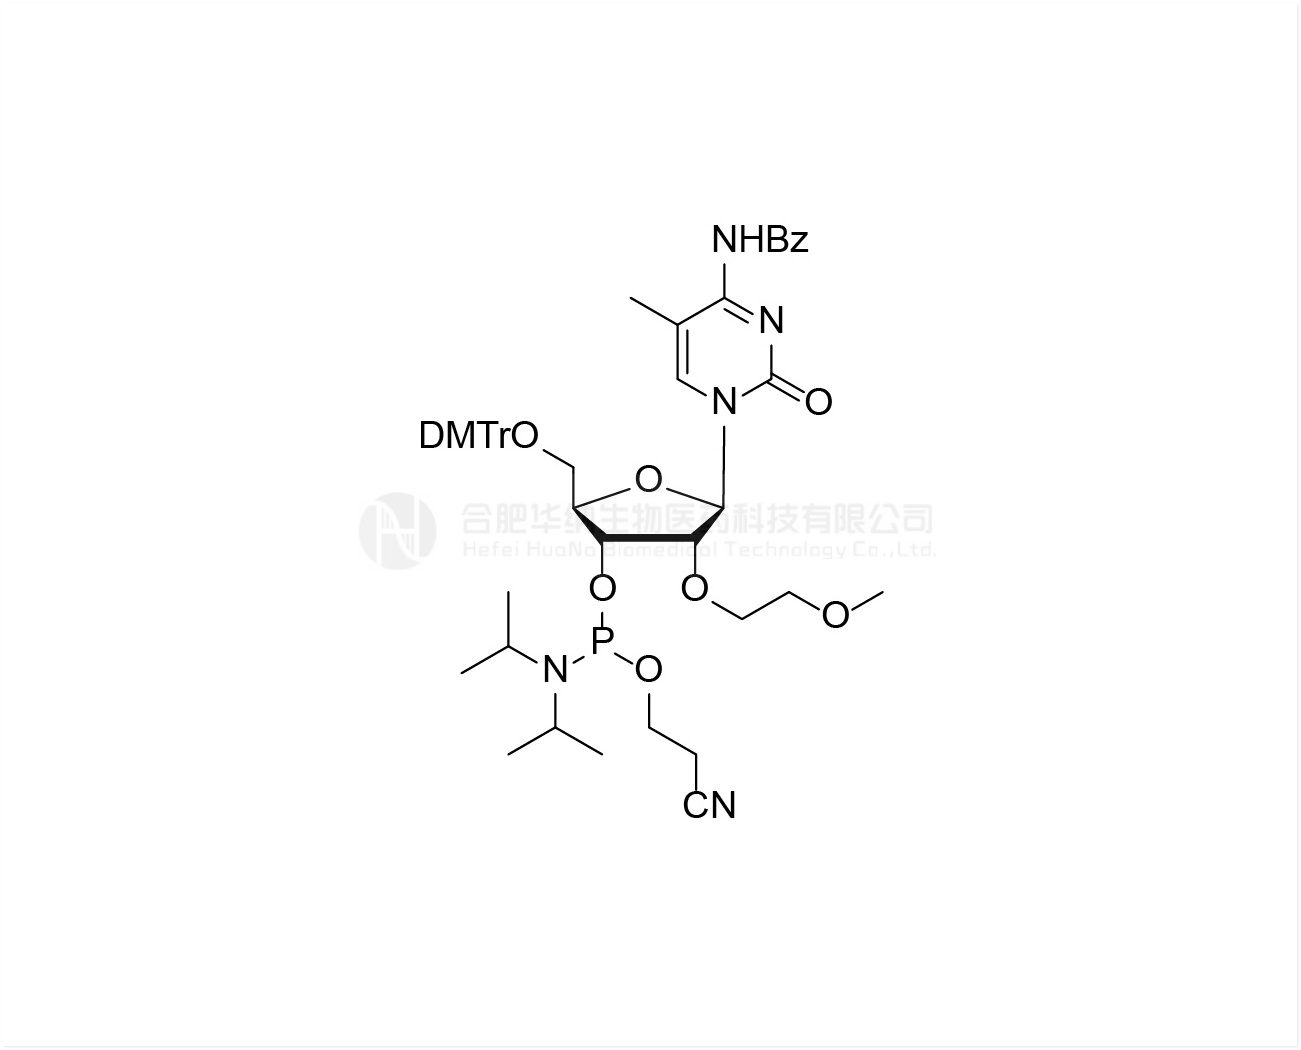 DMTr-2'-O-MOE-5-Me-rC(Bz)-3'-CE -Phosphoramidite